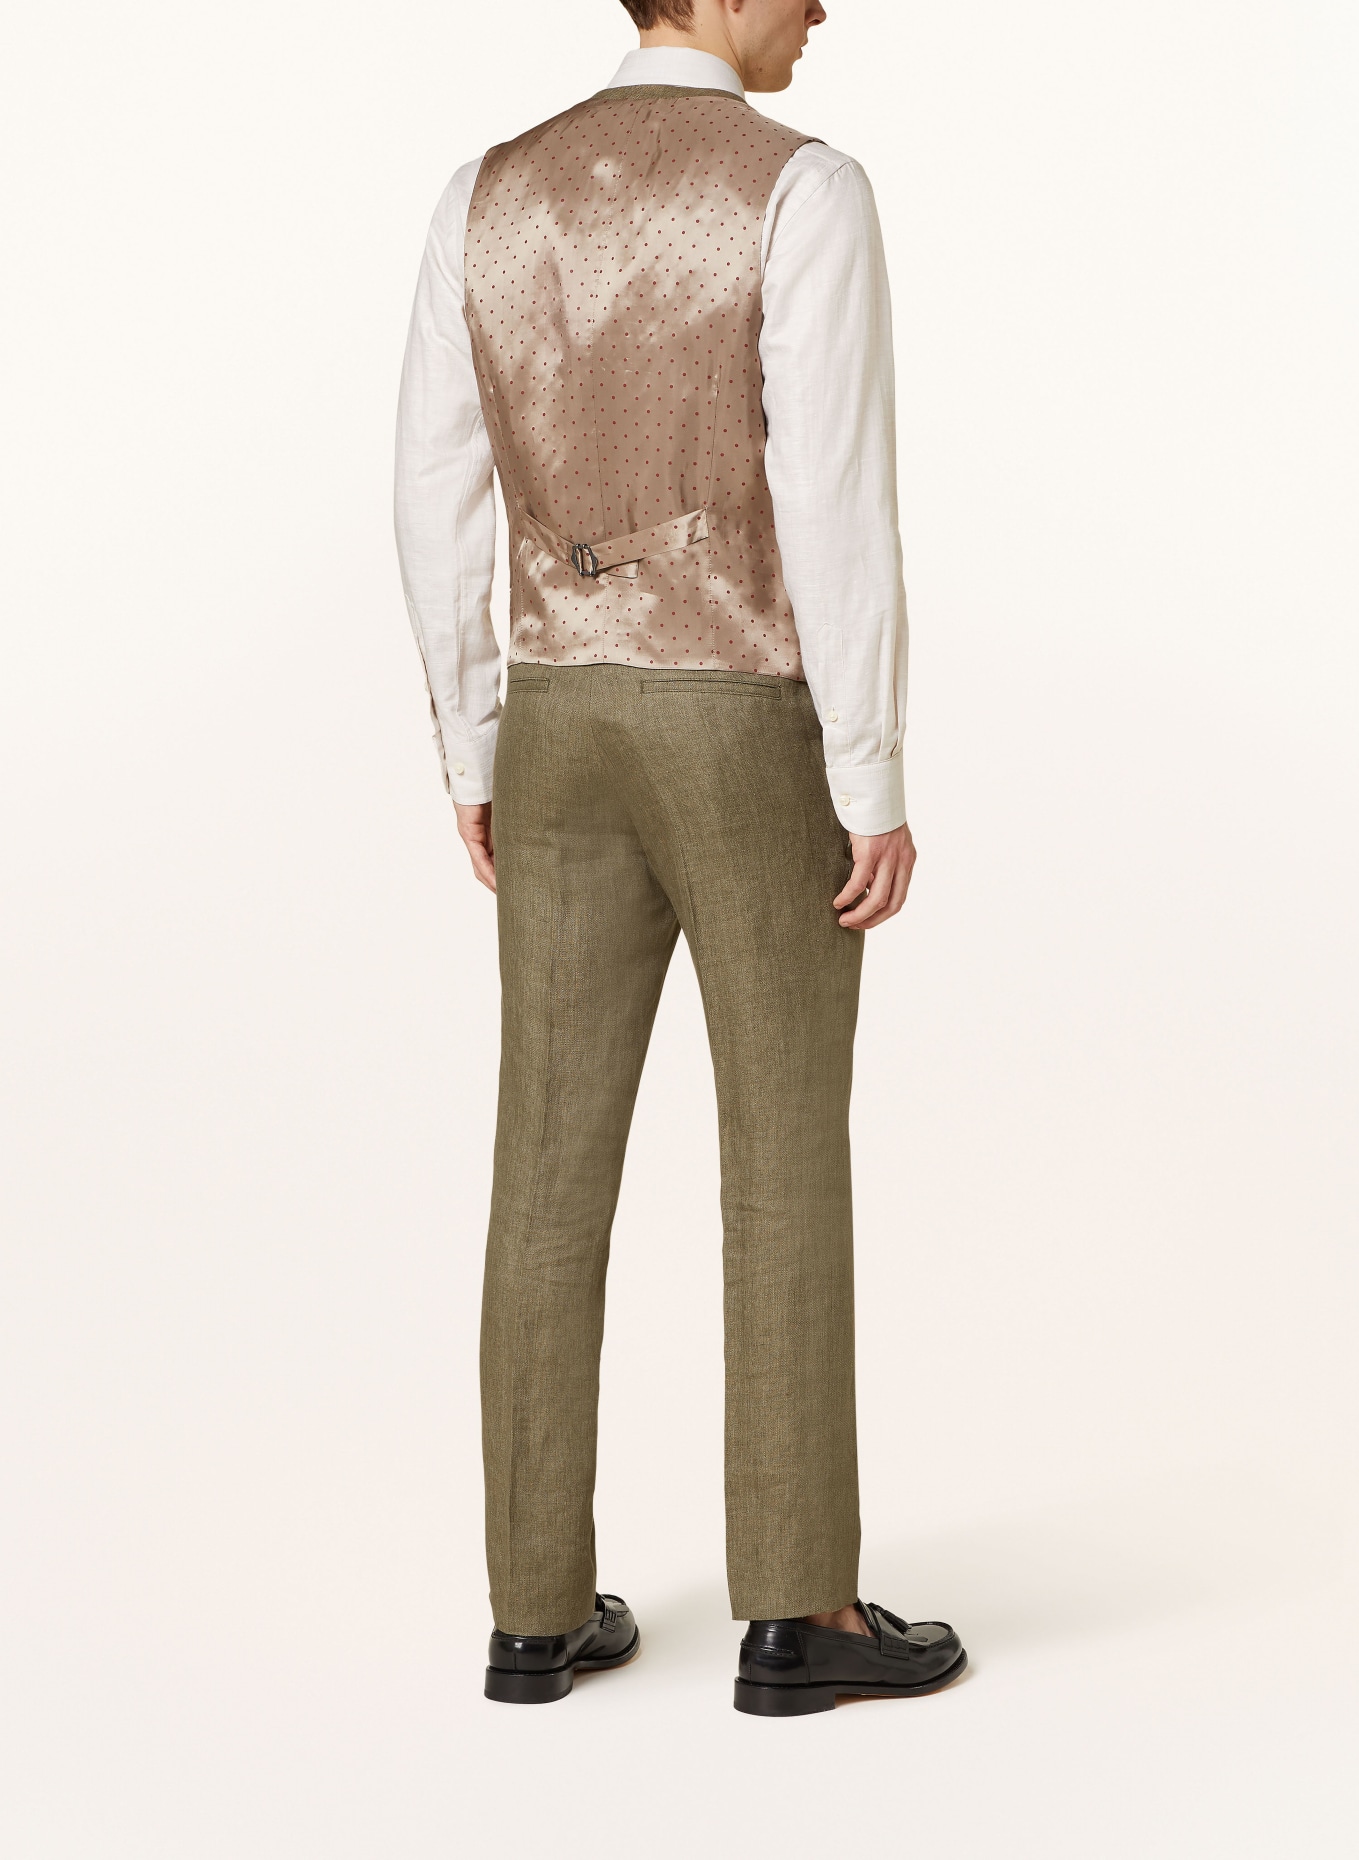 SAND COPENHAGEN Suit vest ALFORD extra slim fit made of linen, Color: 350 OLIVE (Image 4)